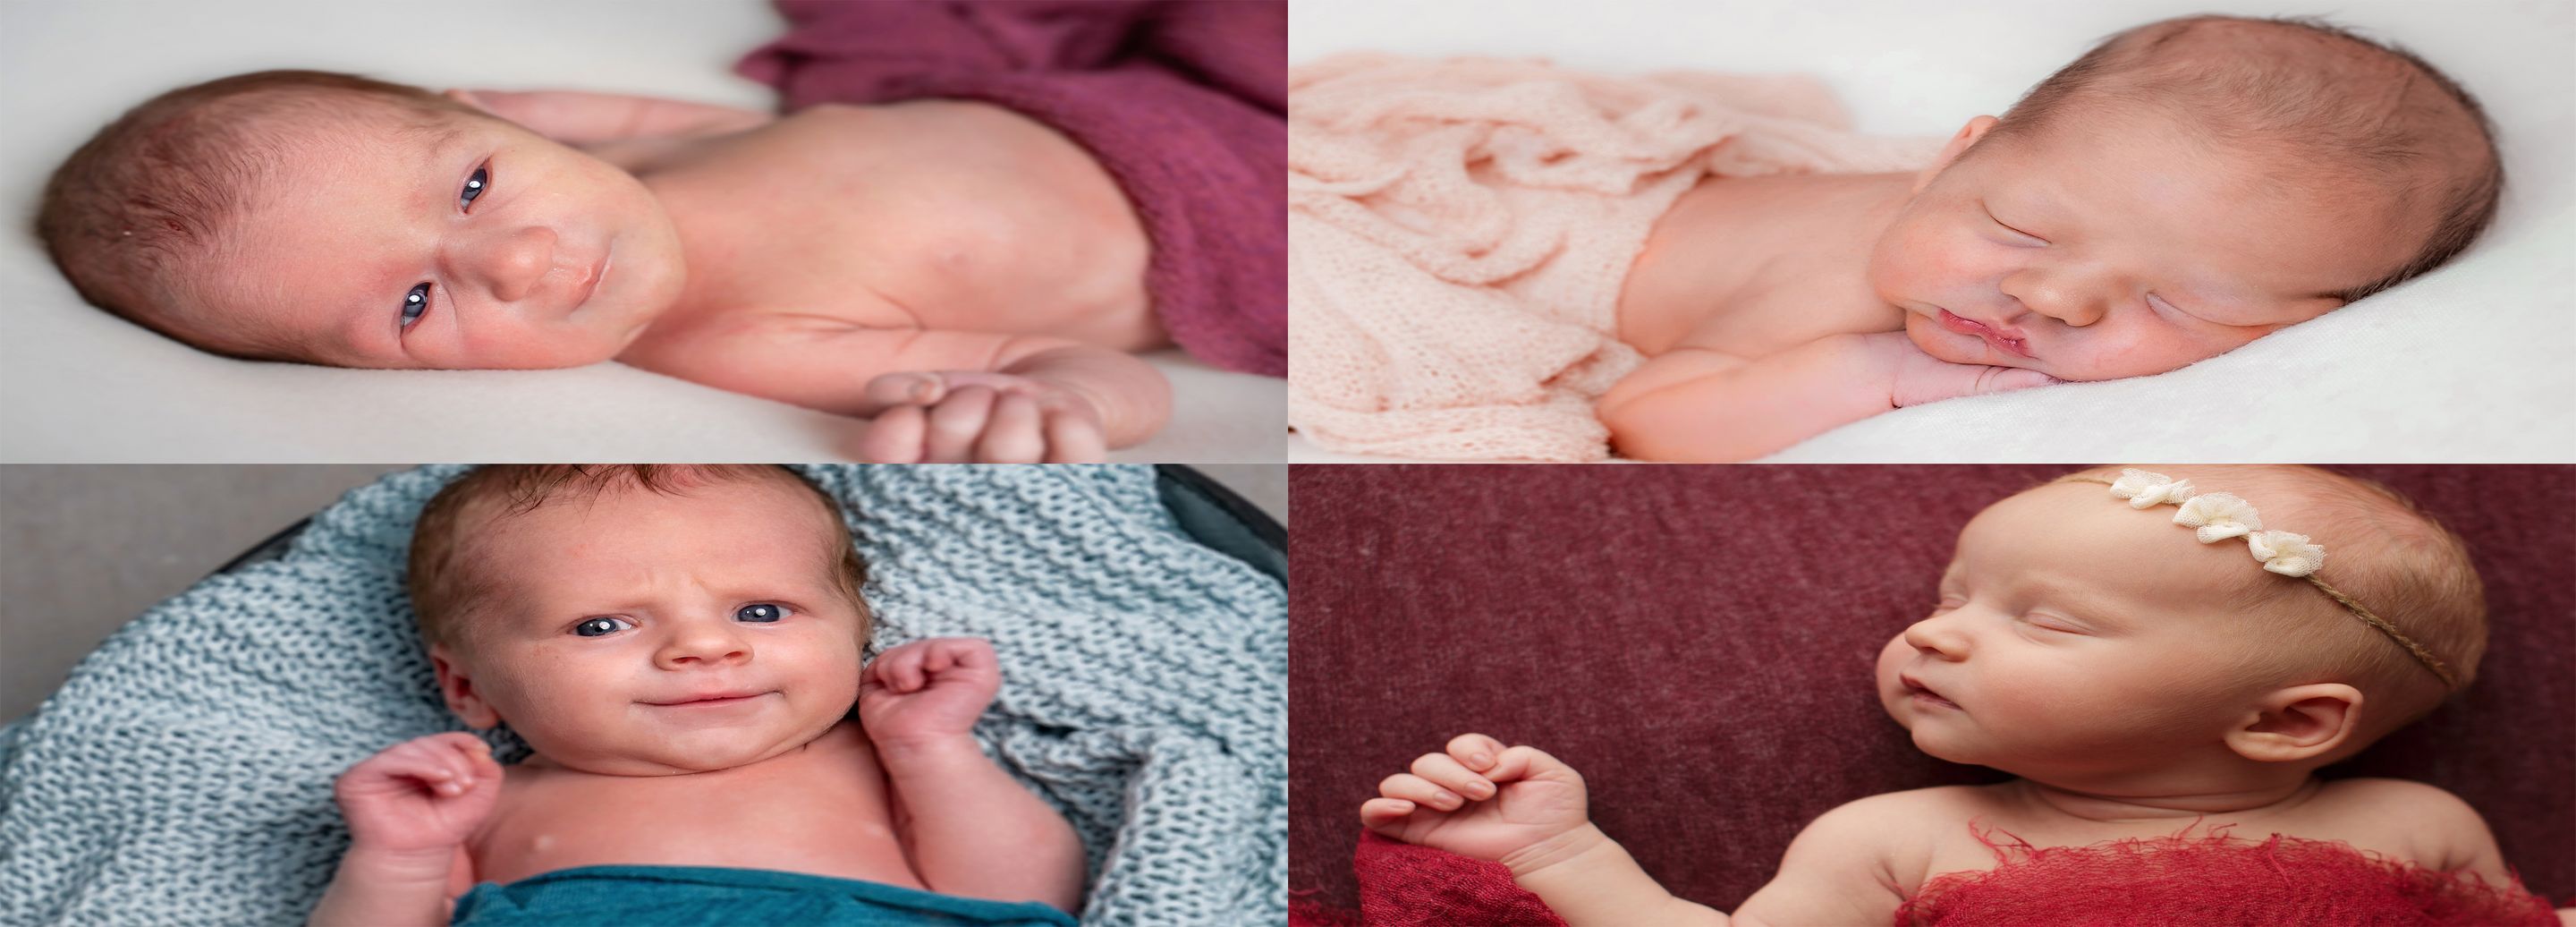 Bilder zeigen Neugeborene